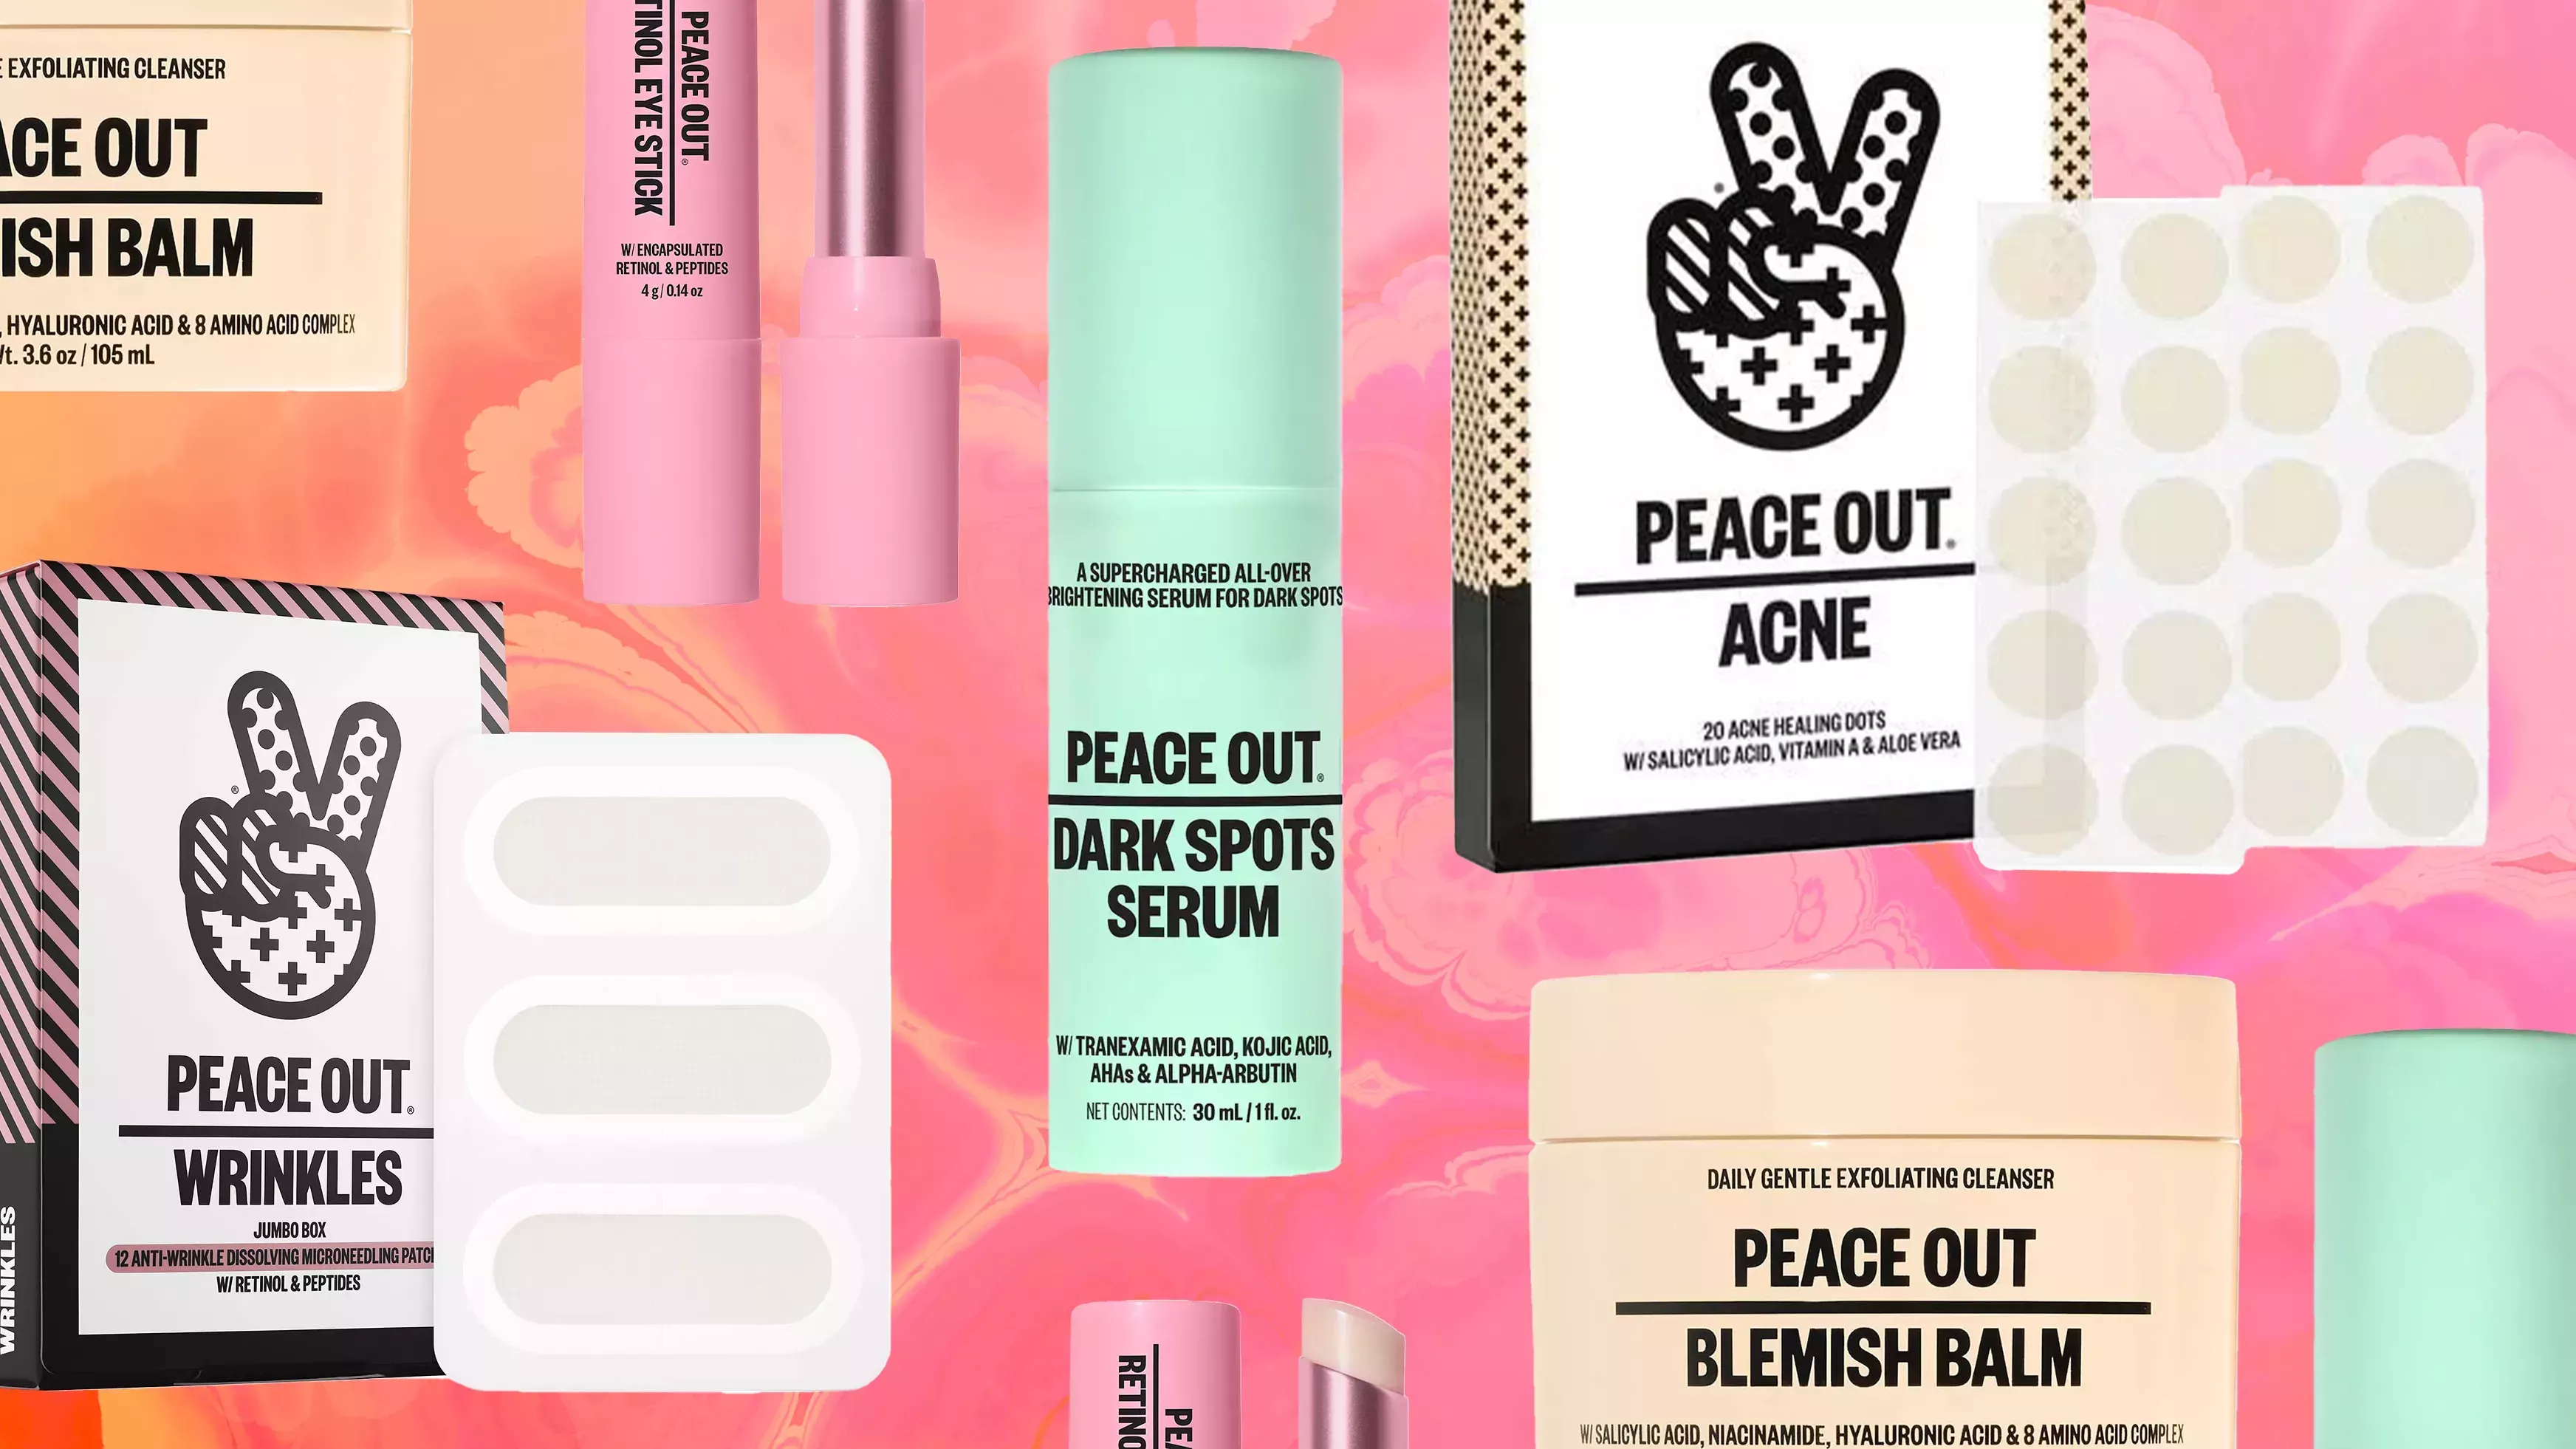 Todo el sitio web de Peace Out Skin Care está teniendo una gran venta en este momento